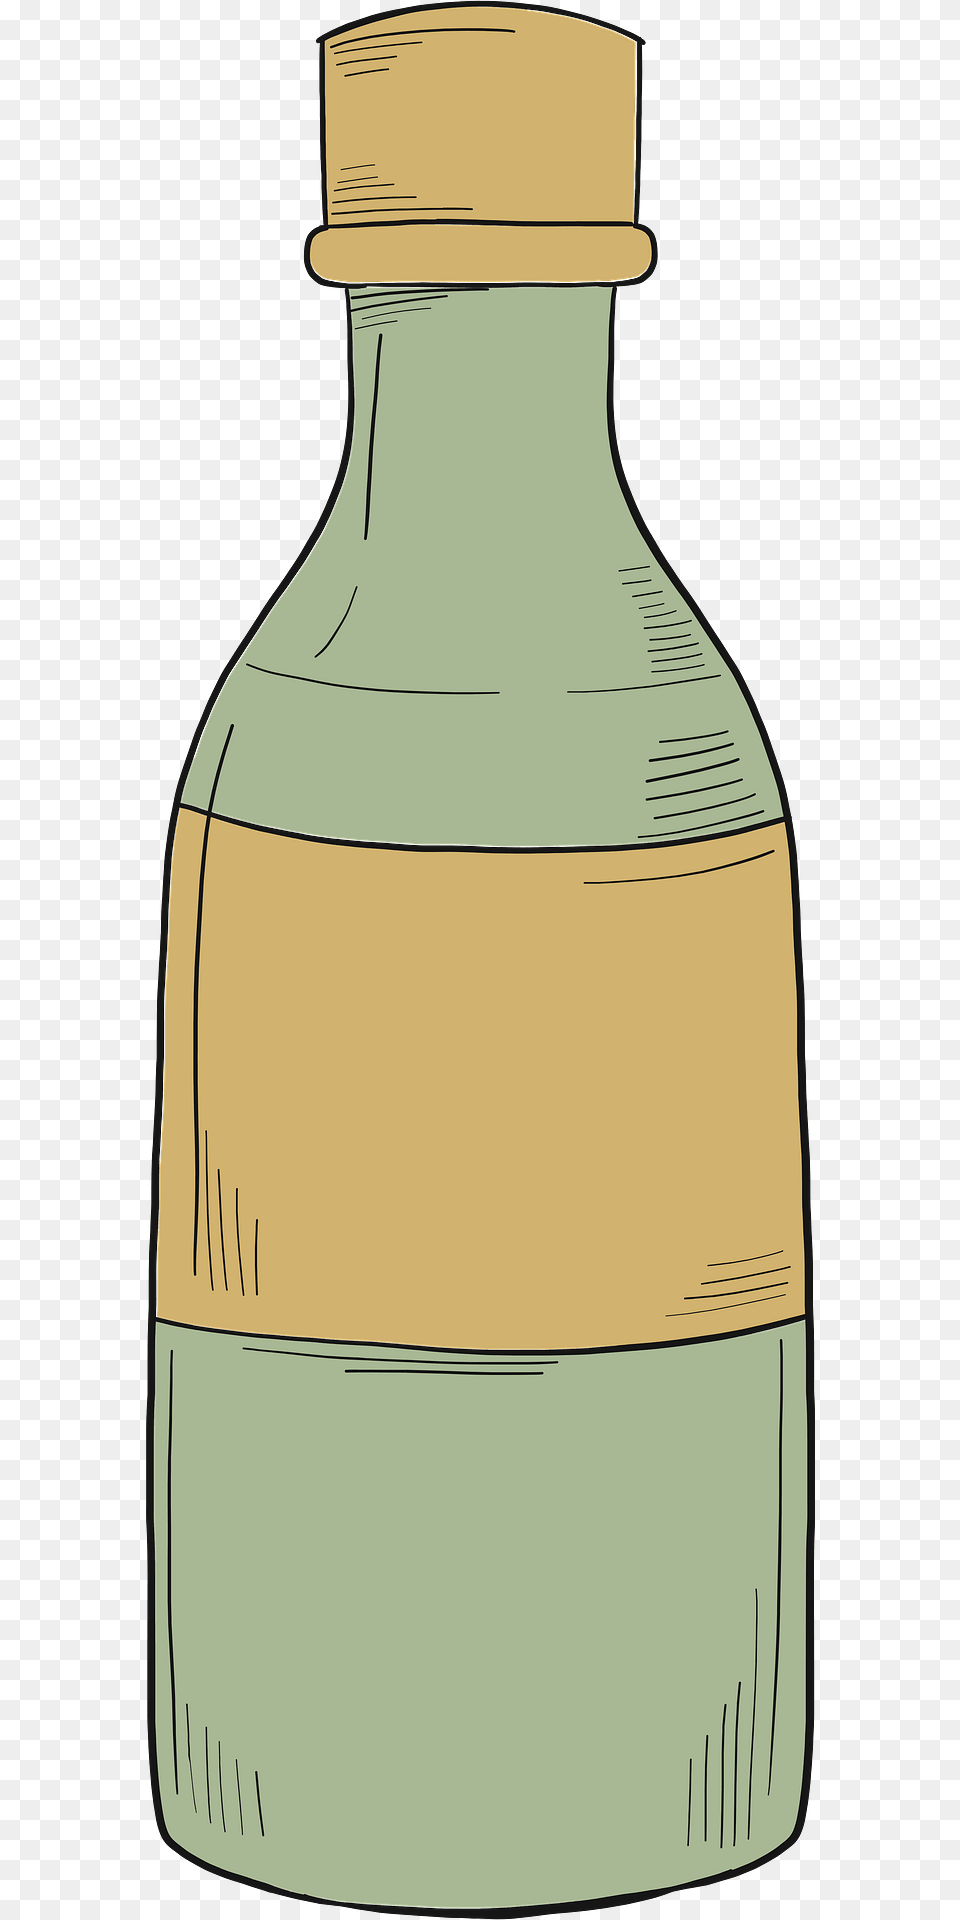 Bottle Of Alcohol Clipart, Jar, Pottery, Vase, Ink Bottle Free Transparent Png